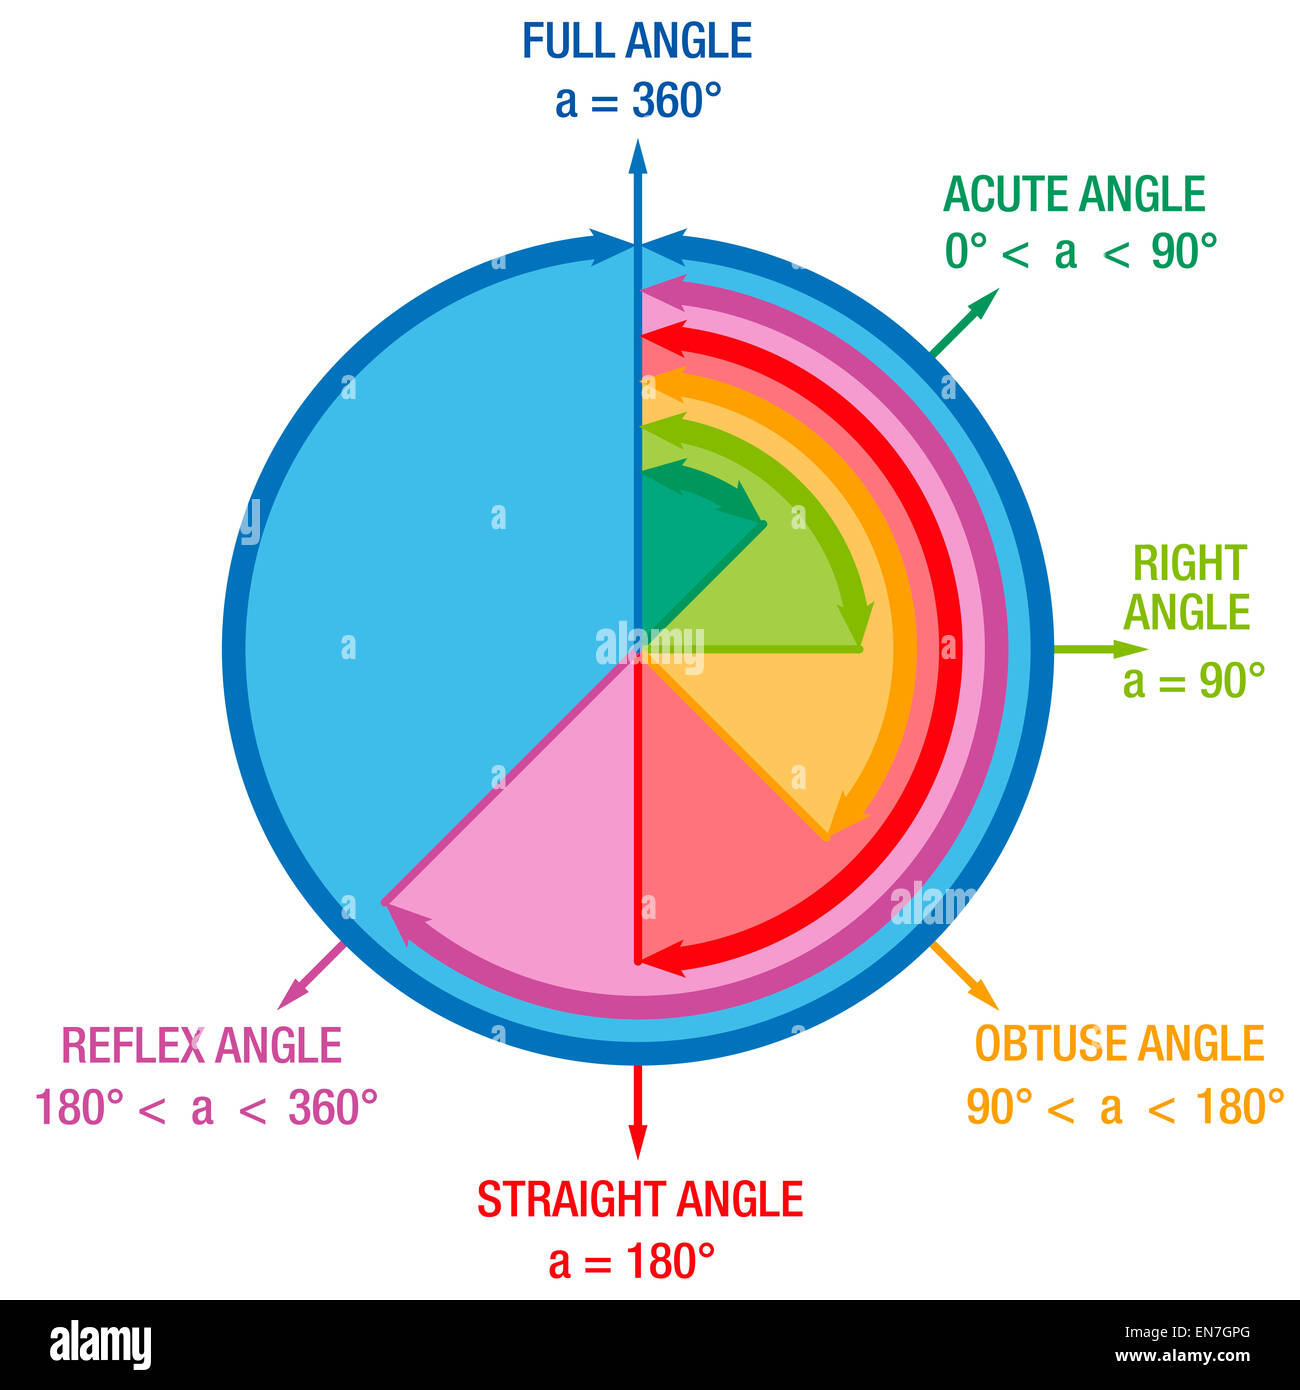 Les angles de géométrie mathématiques et sciences, comme l'angle aigu, angle droit ou angle de Reflex. Banque D'Images